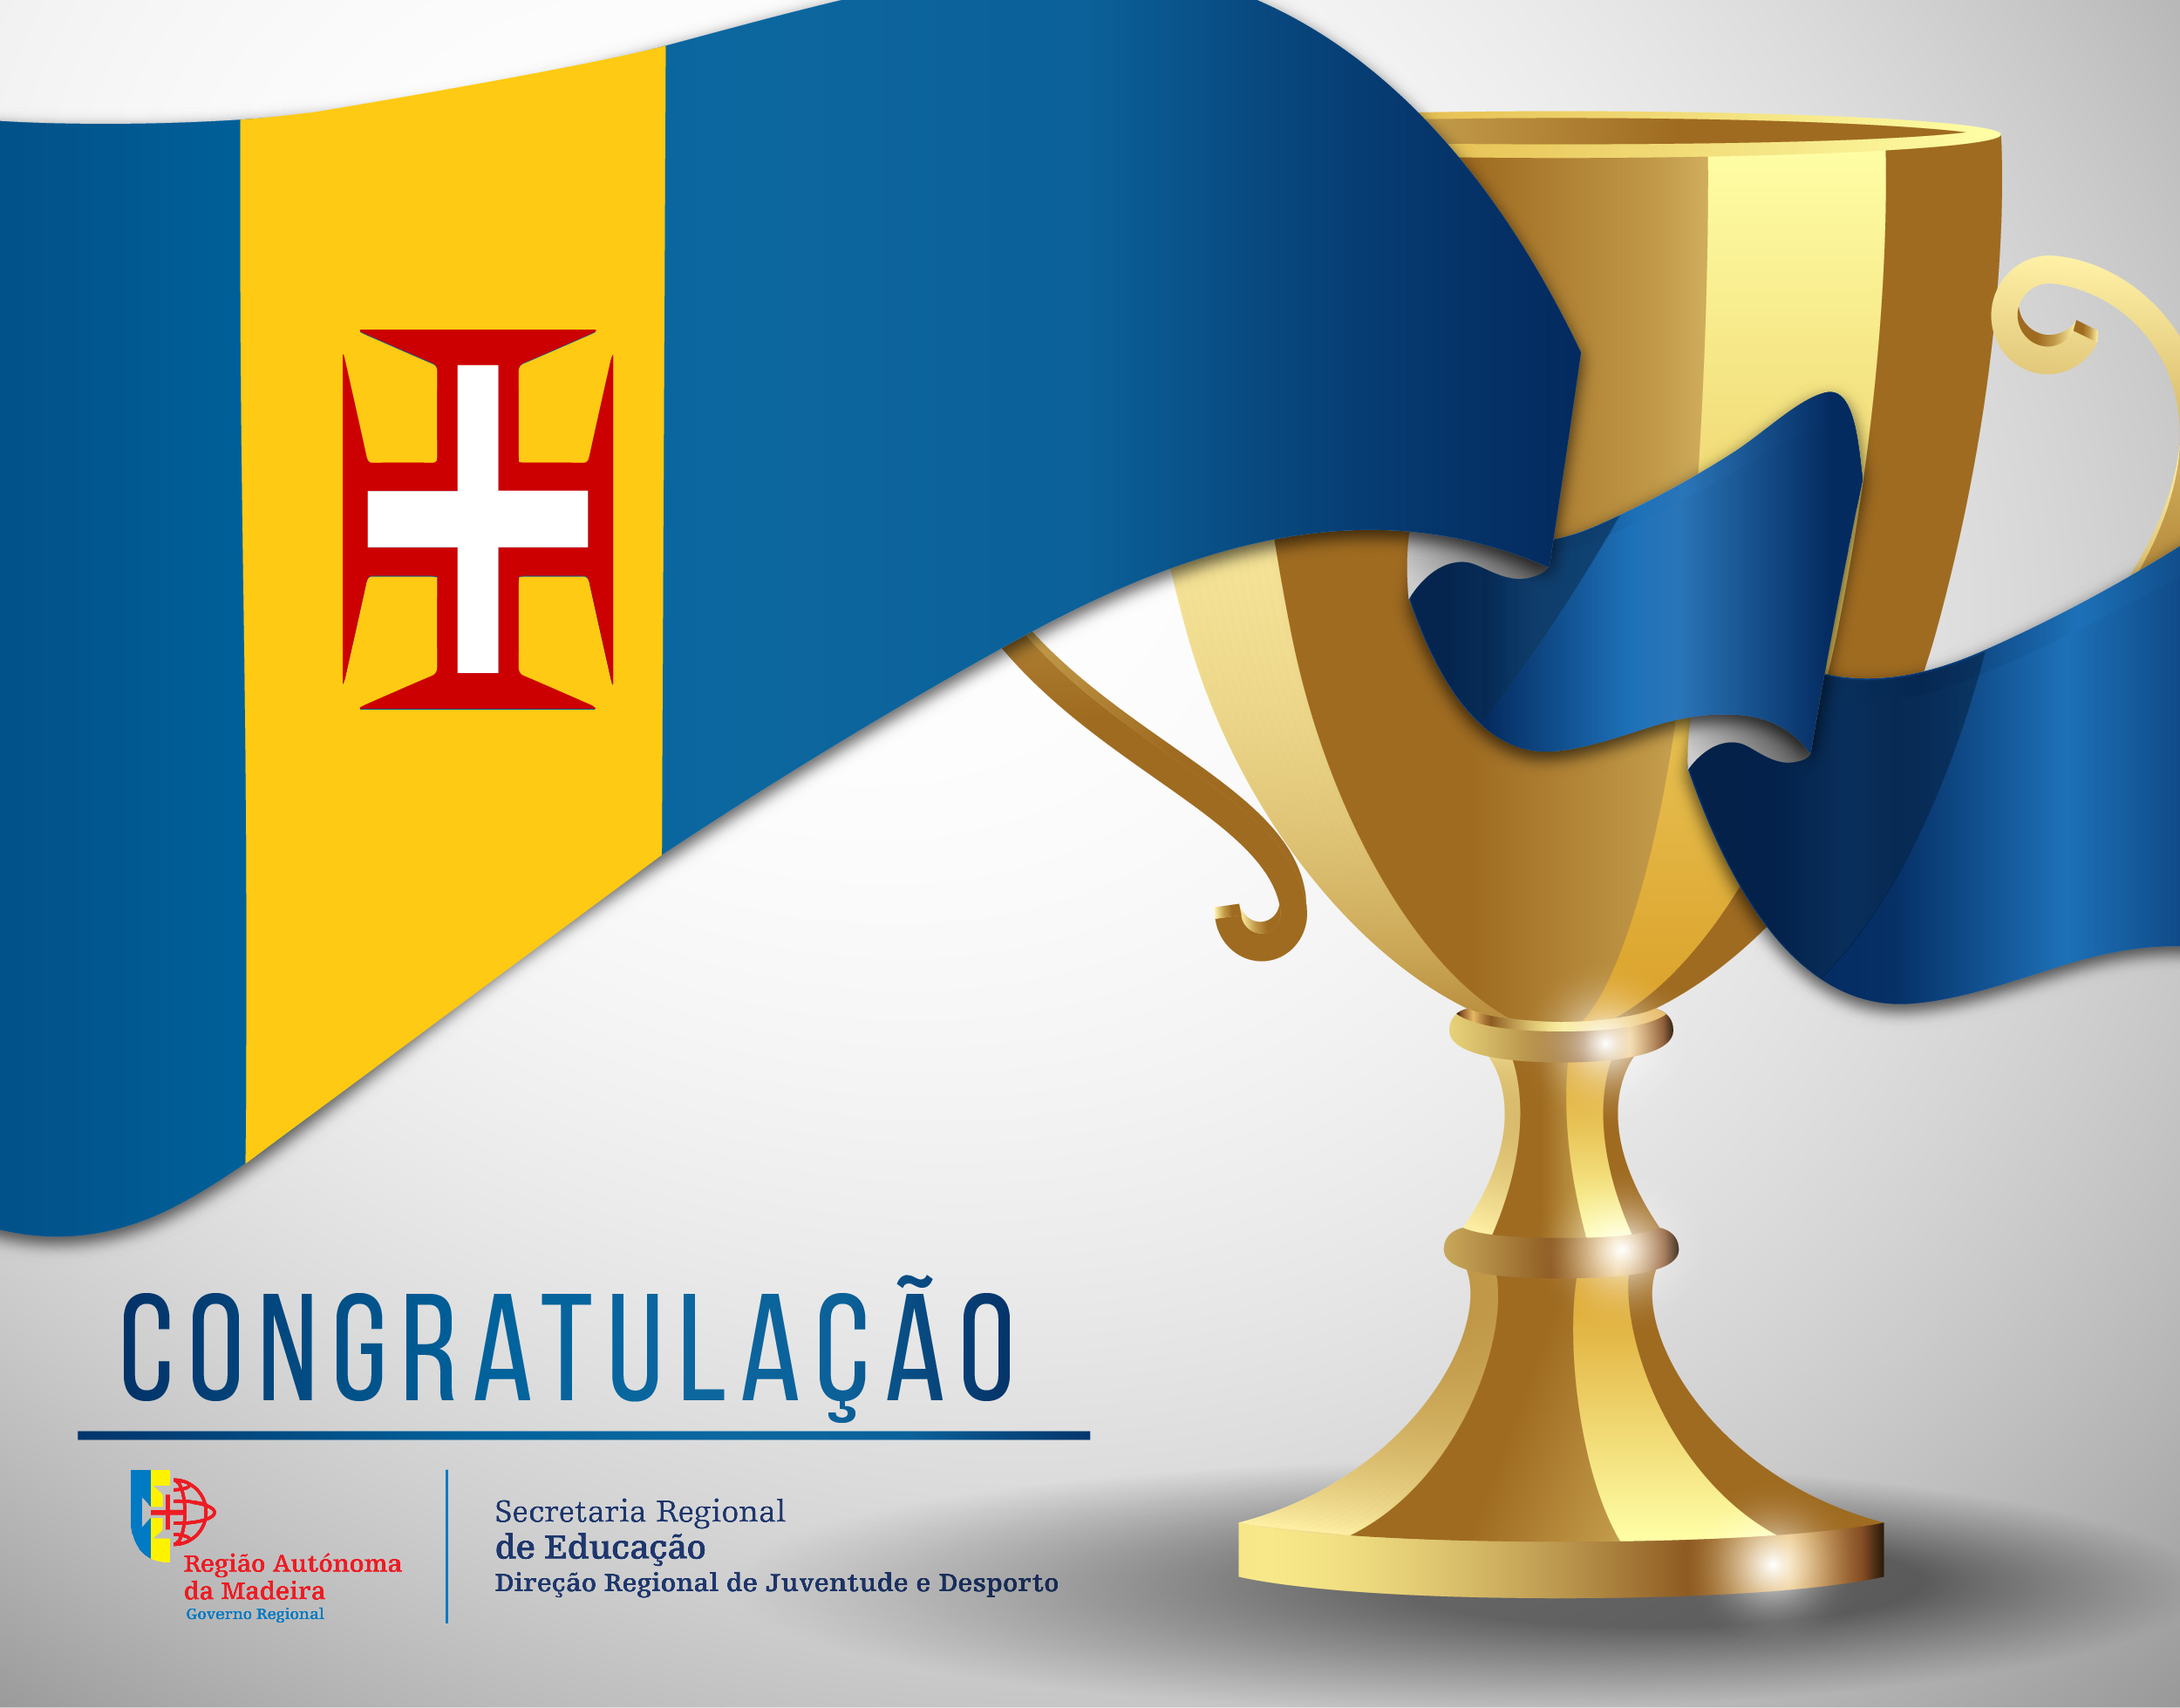 Congratulação - Rodrigo Fernandes (Clube Naval do Funchal)